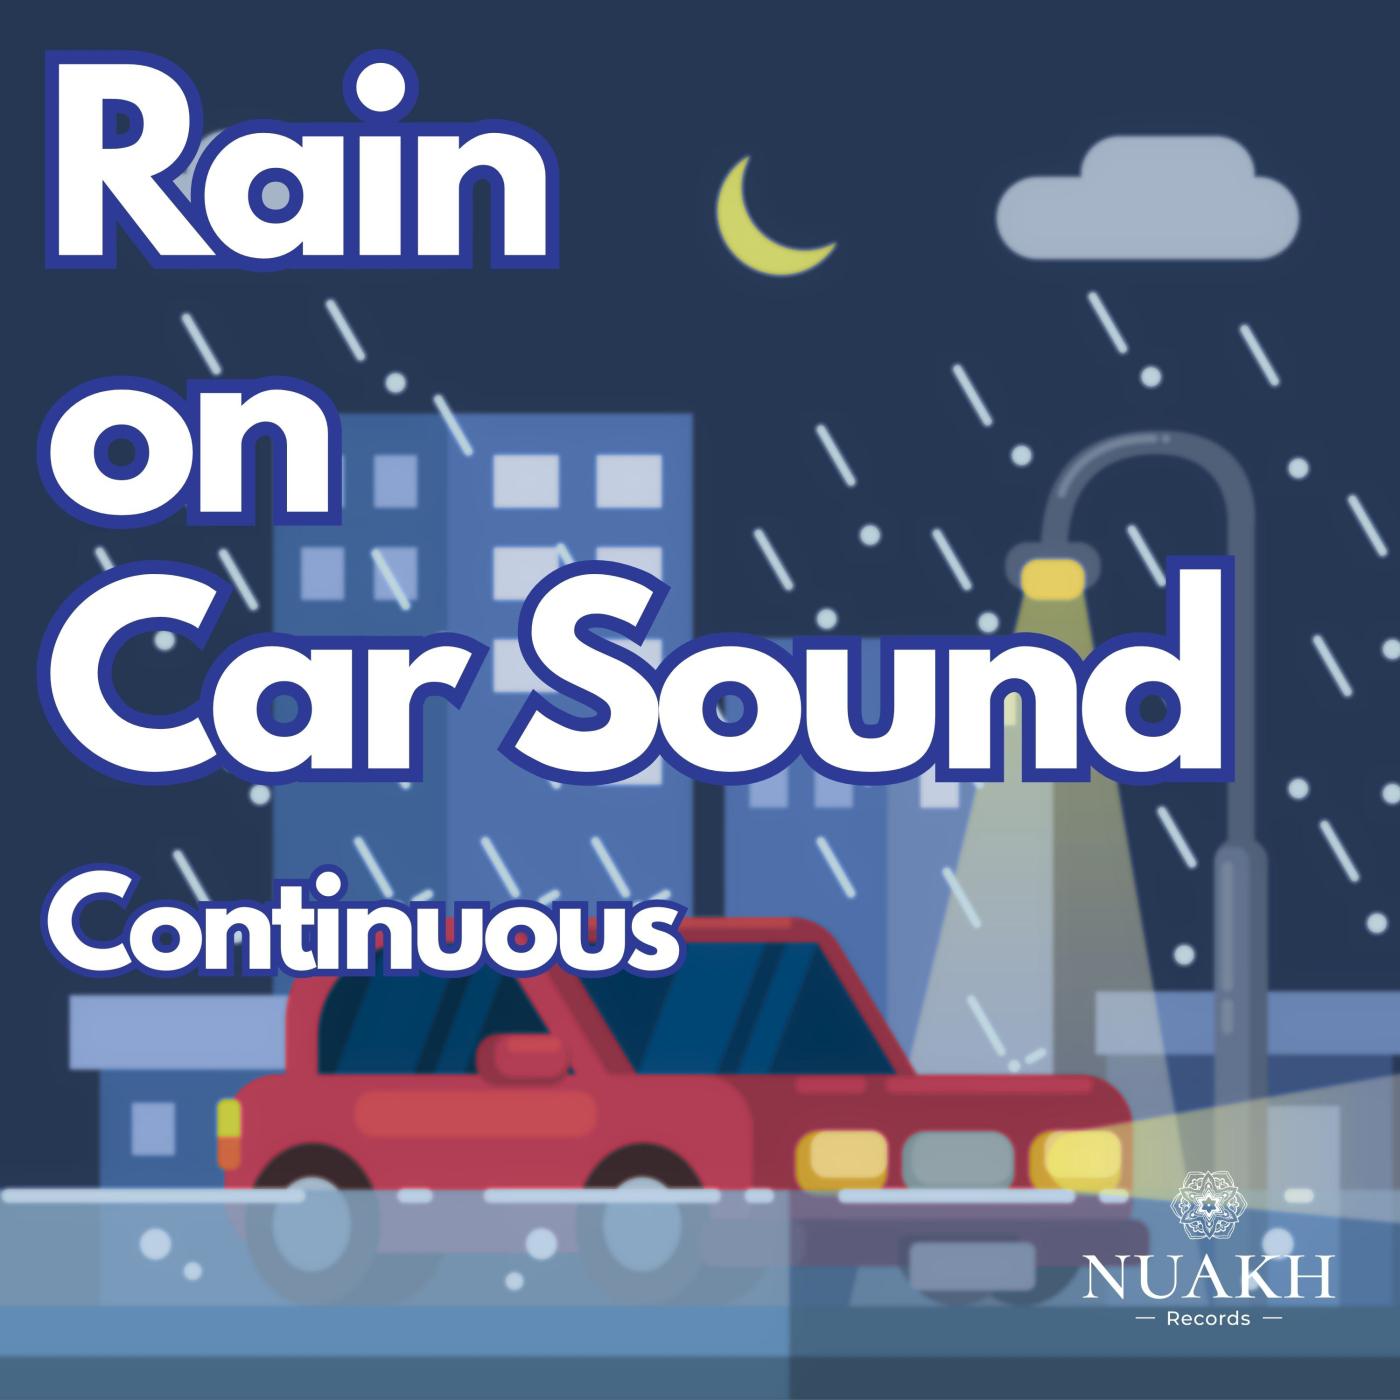 Rain for Sleep - Rain on Car, Pt. 25 (Continuous)